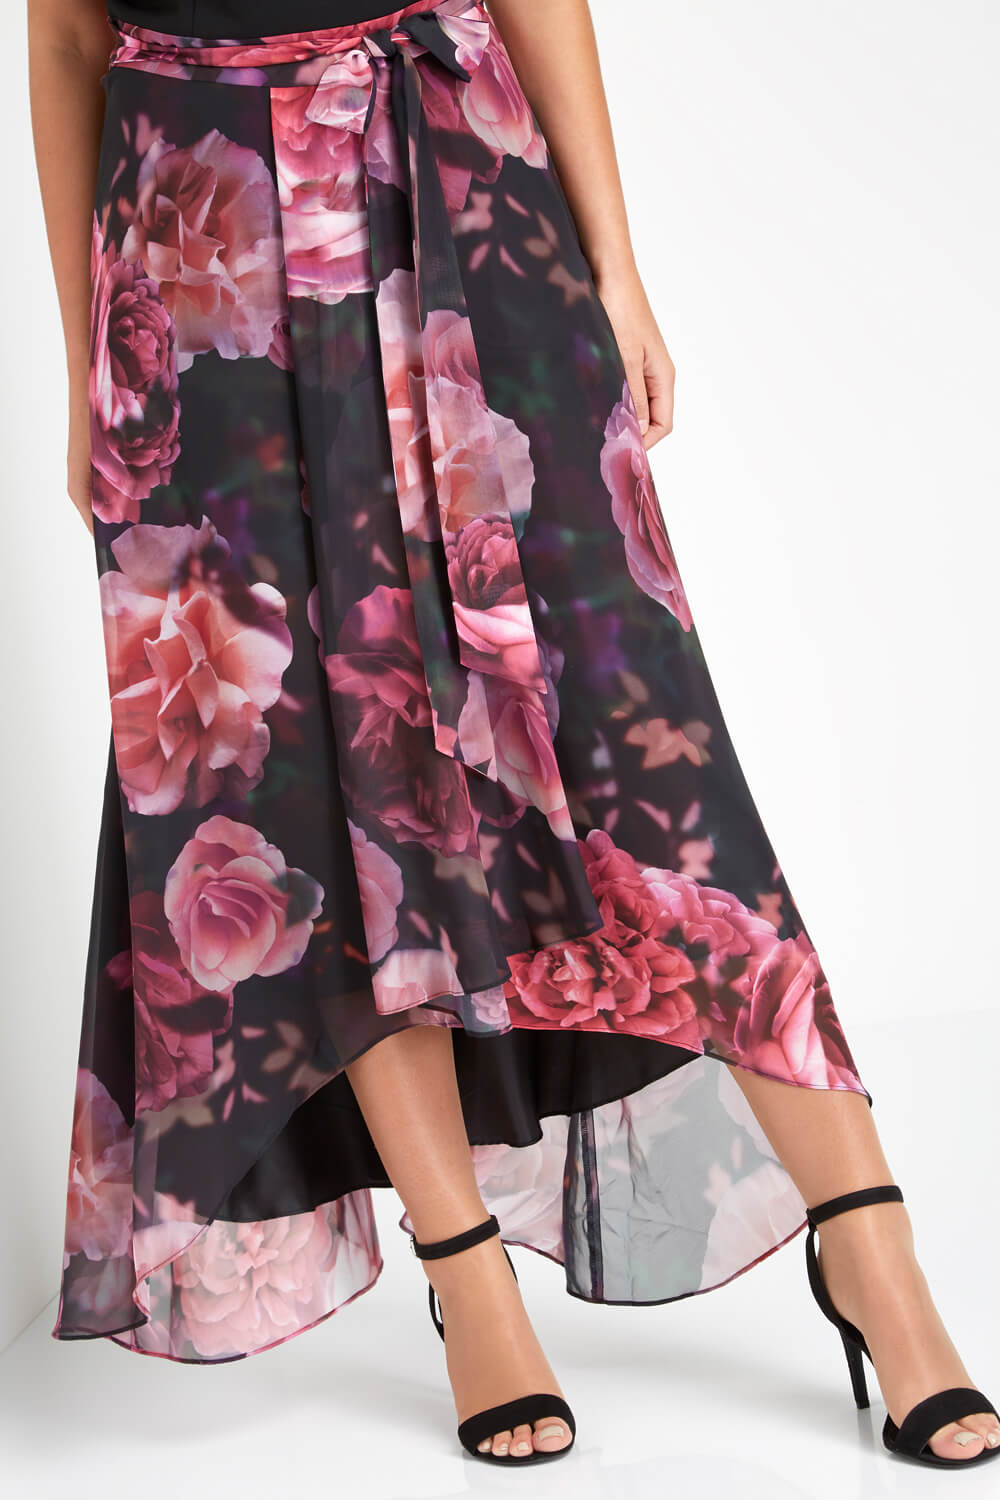 Rose Floral Print Cold Shoulder Maxi Dress, Image 5 of 6